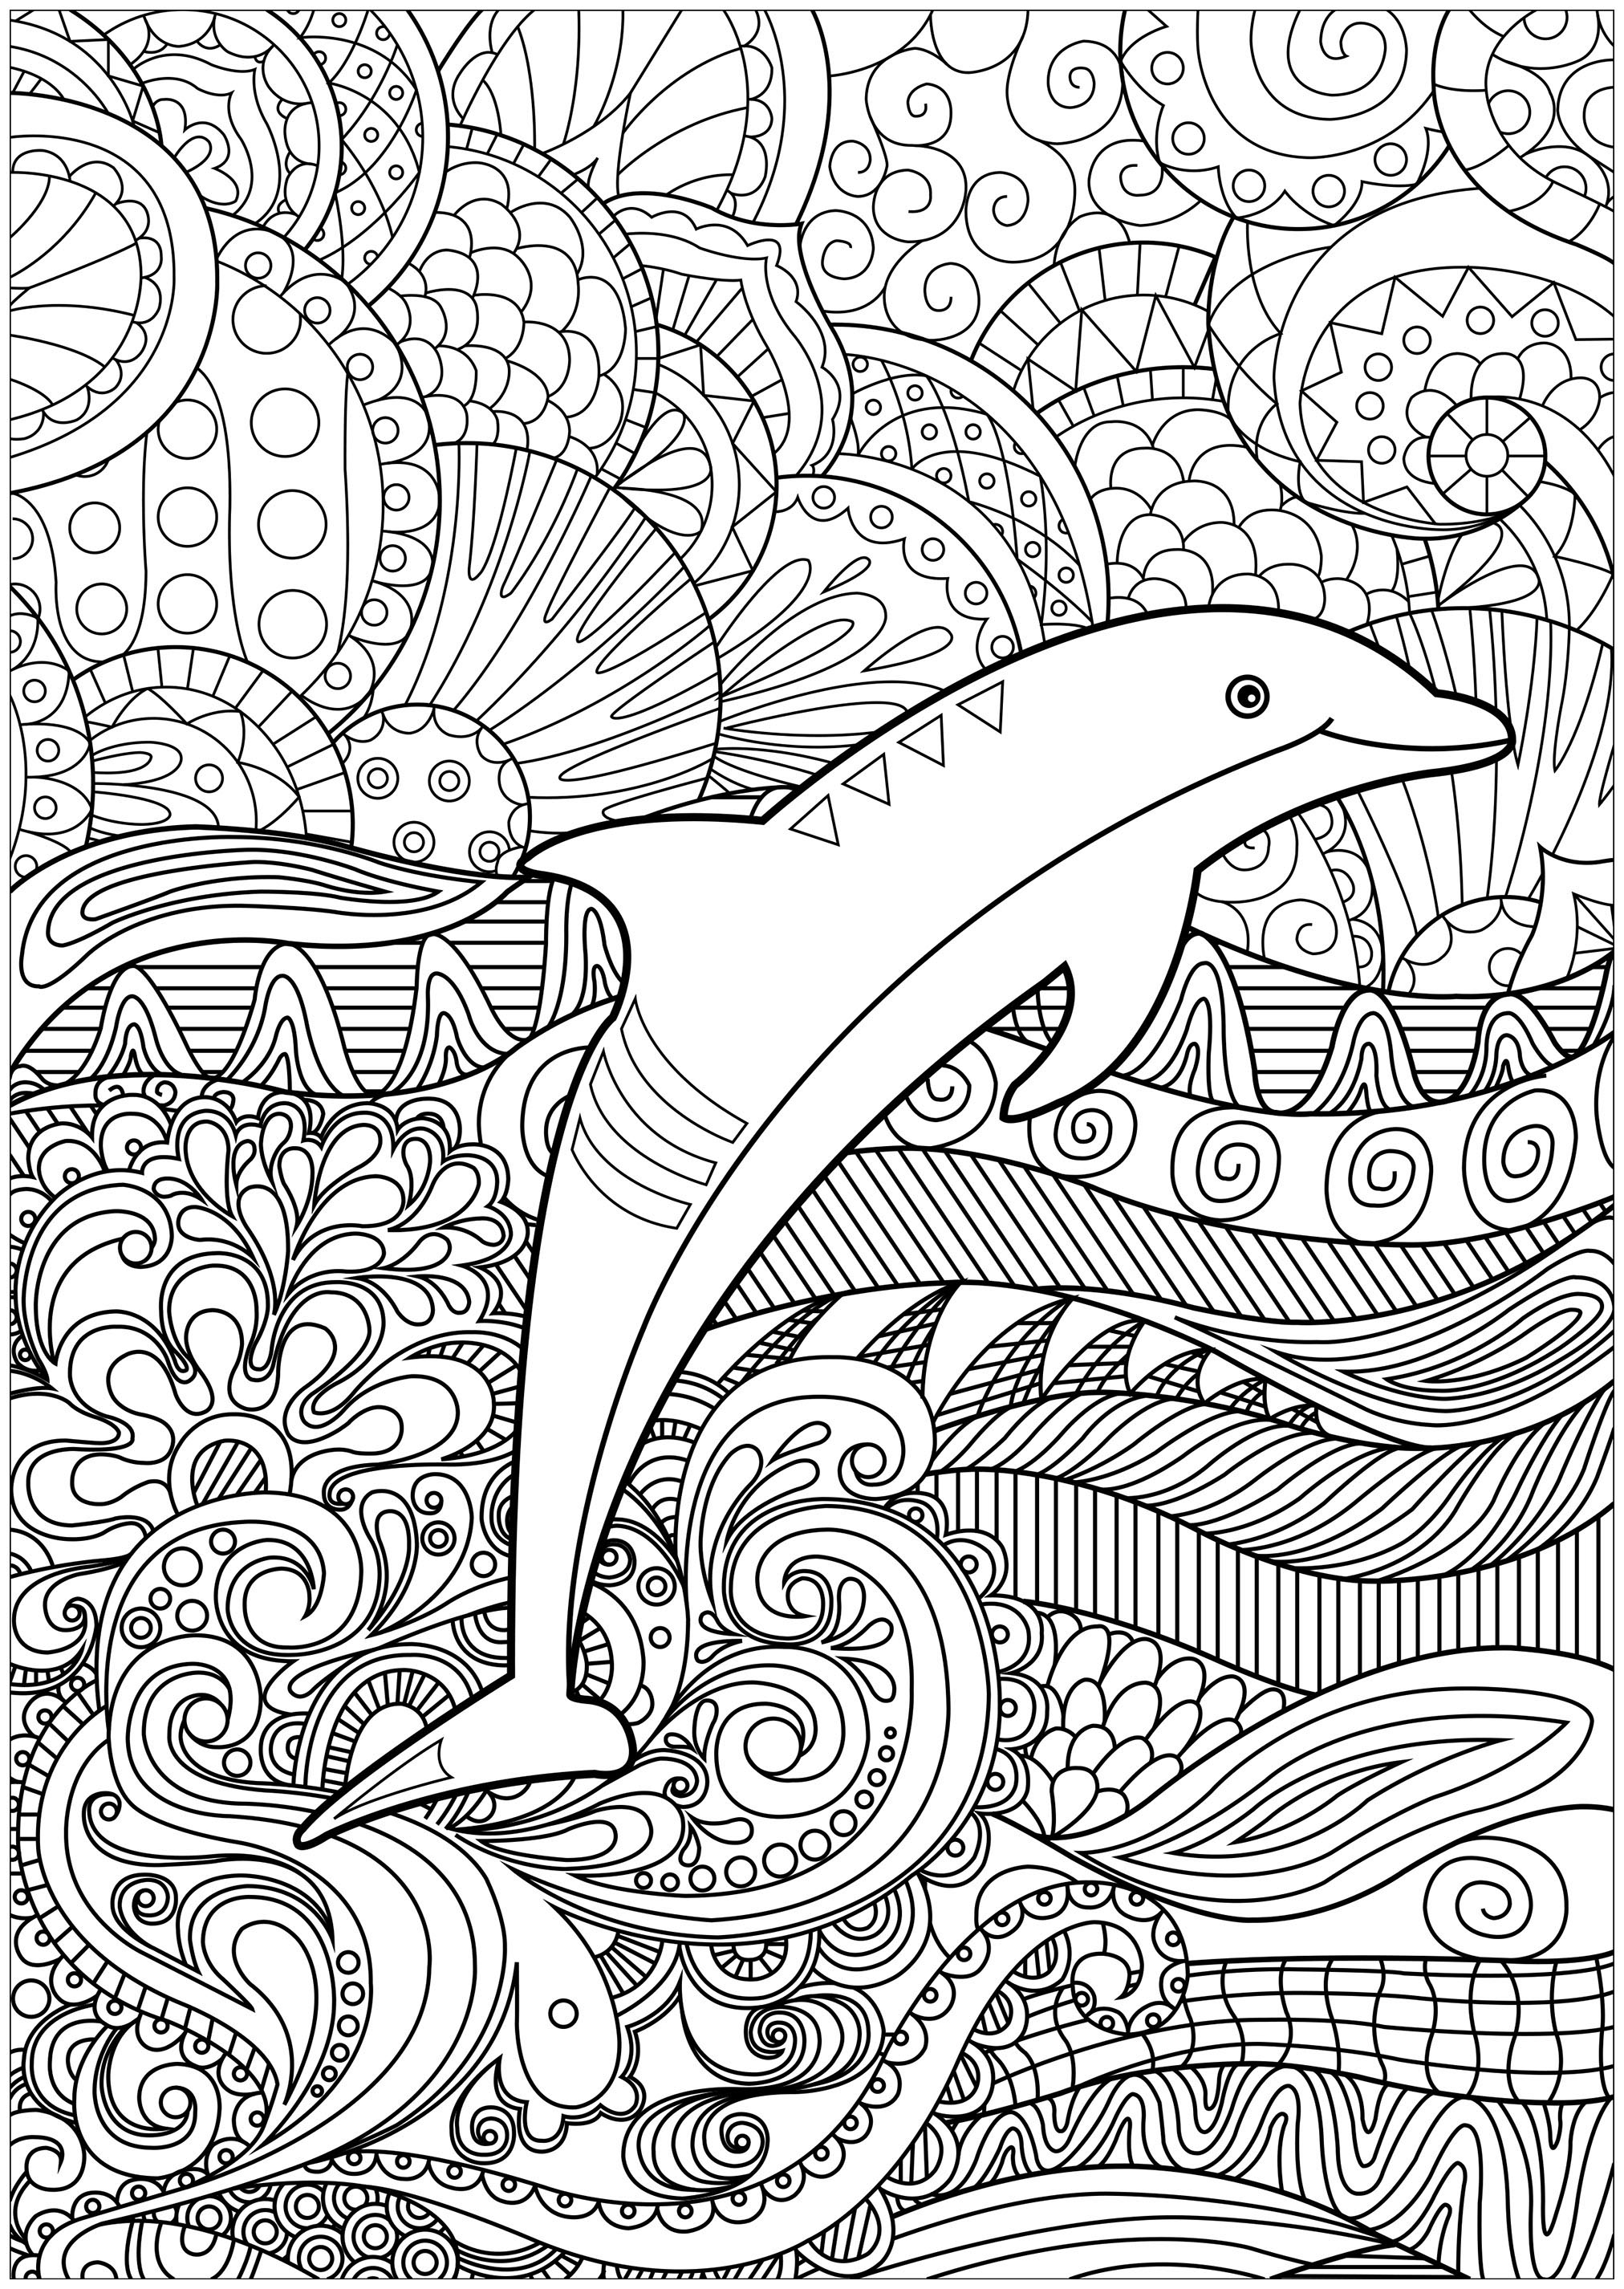 Colora os muitos pormenores do mar em que se encontra este elegante golfinho, Artista : Lucie